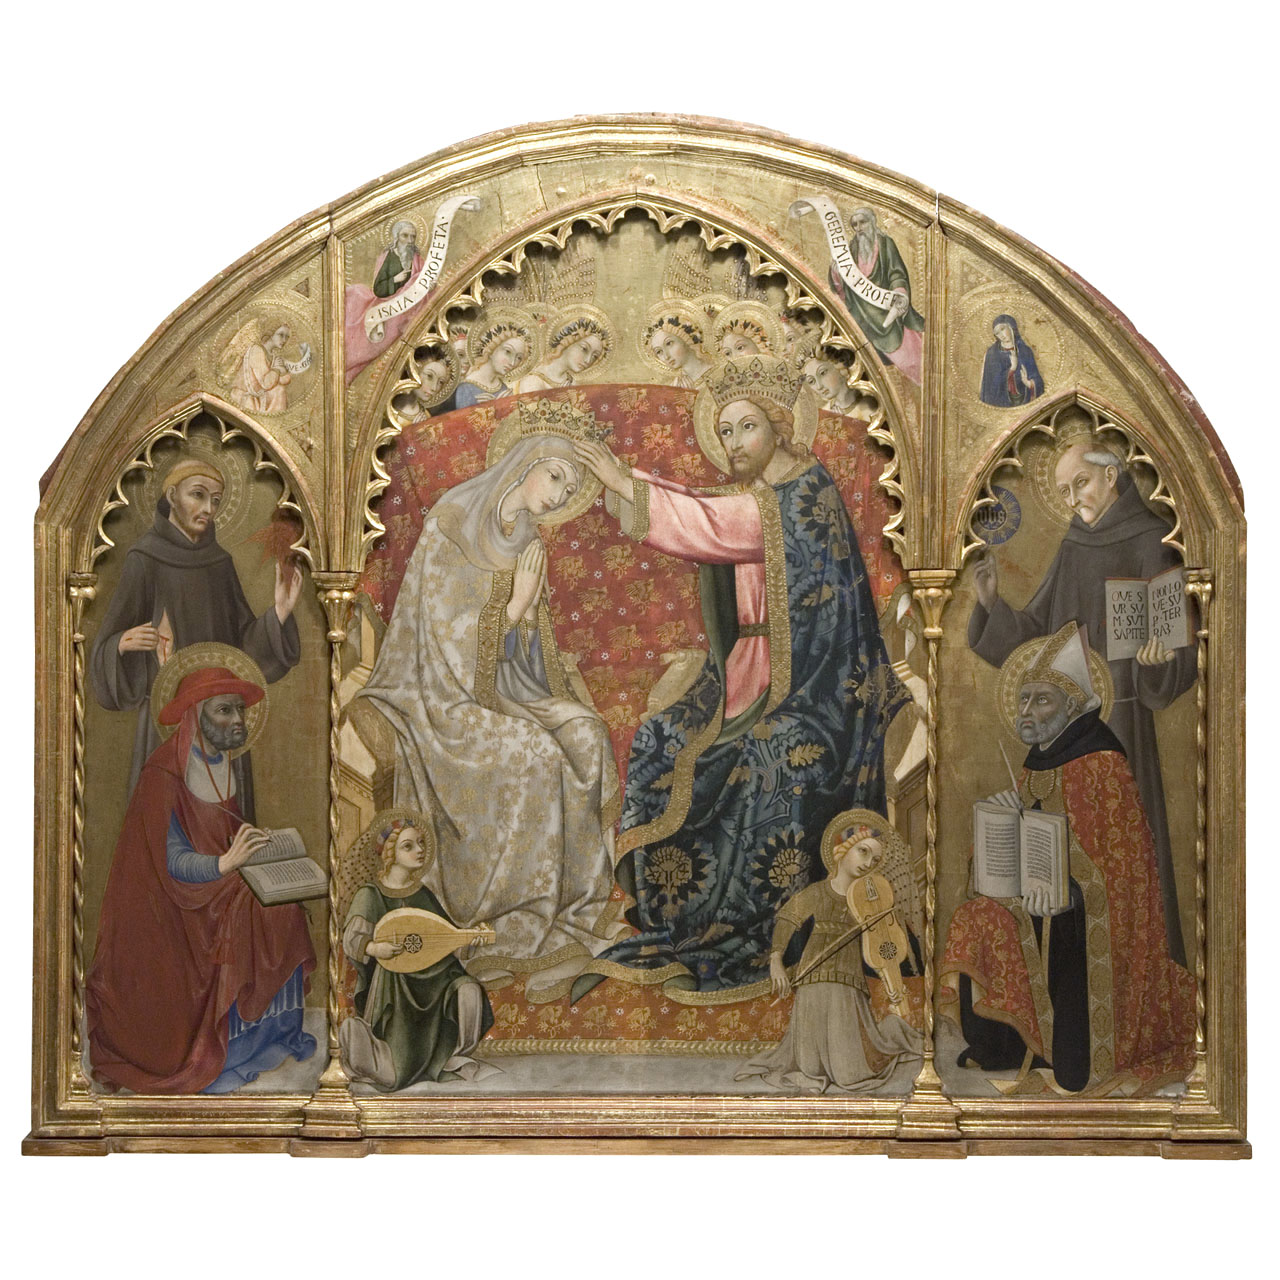 incoronazione di Maria Vergine tra santi, profeti, angeli e angeli musicanti (pala d'altare) di Sano di Pietro (sec. XV)